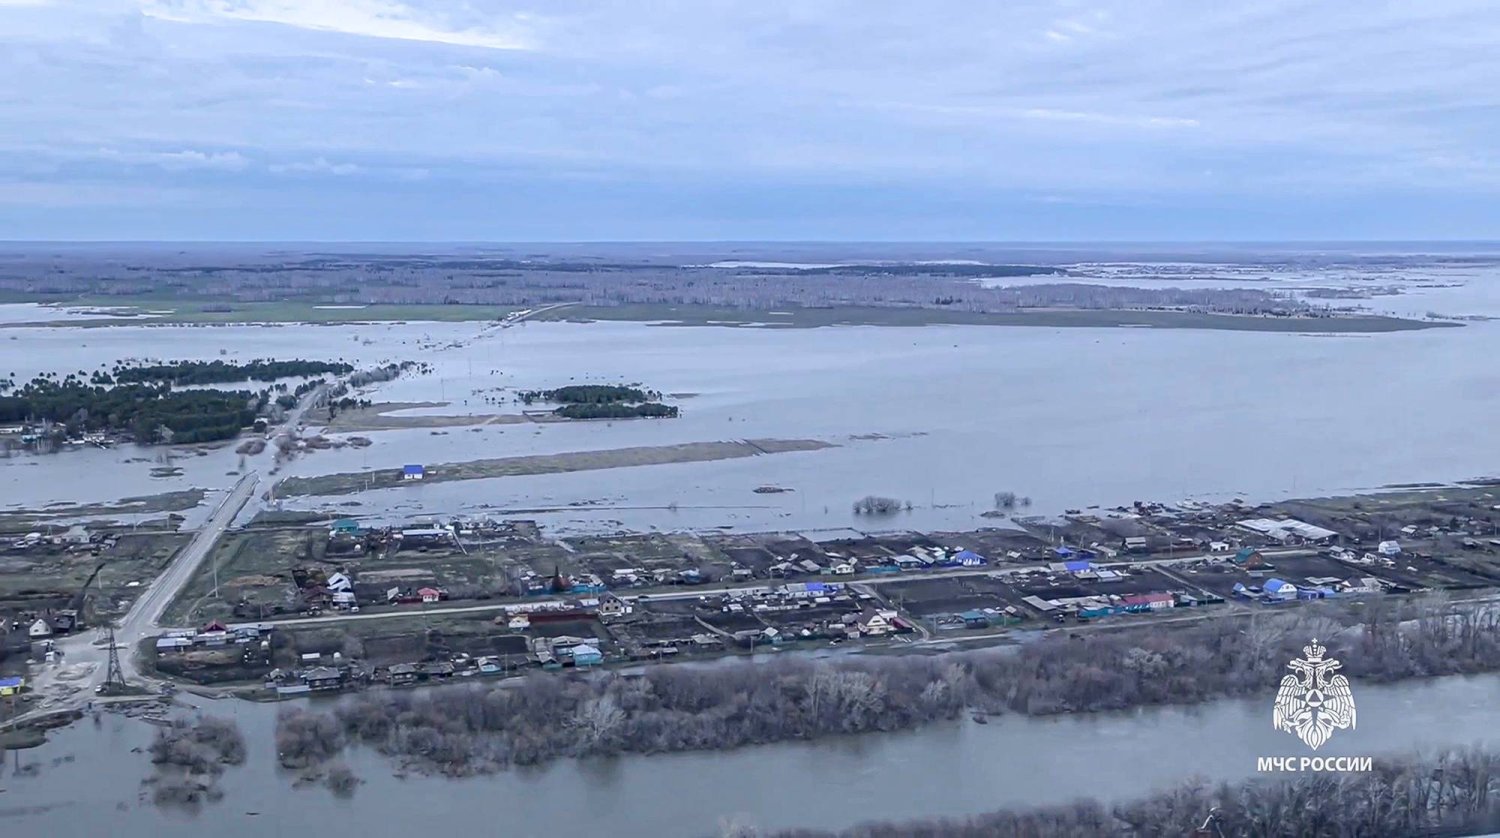 المياه تغمر مساحات واسعة في منطقة كورغان الروسية (أ.ب)